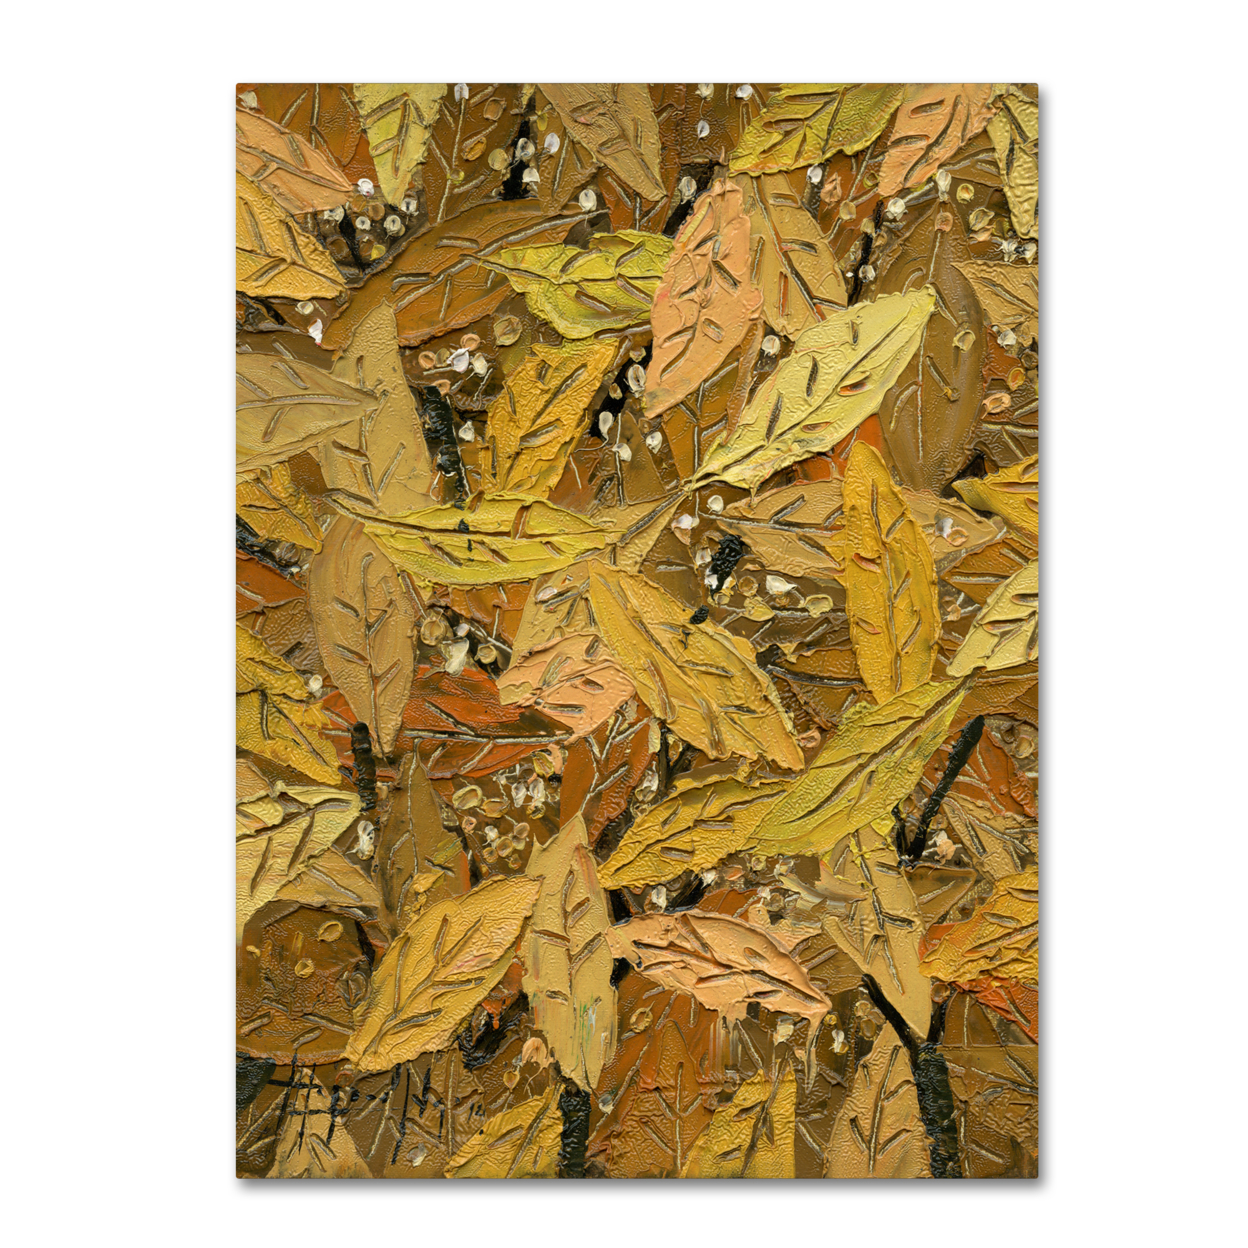 Hai Odelia 'Autumn' Canvas Wall Art 35 X 47 Inches